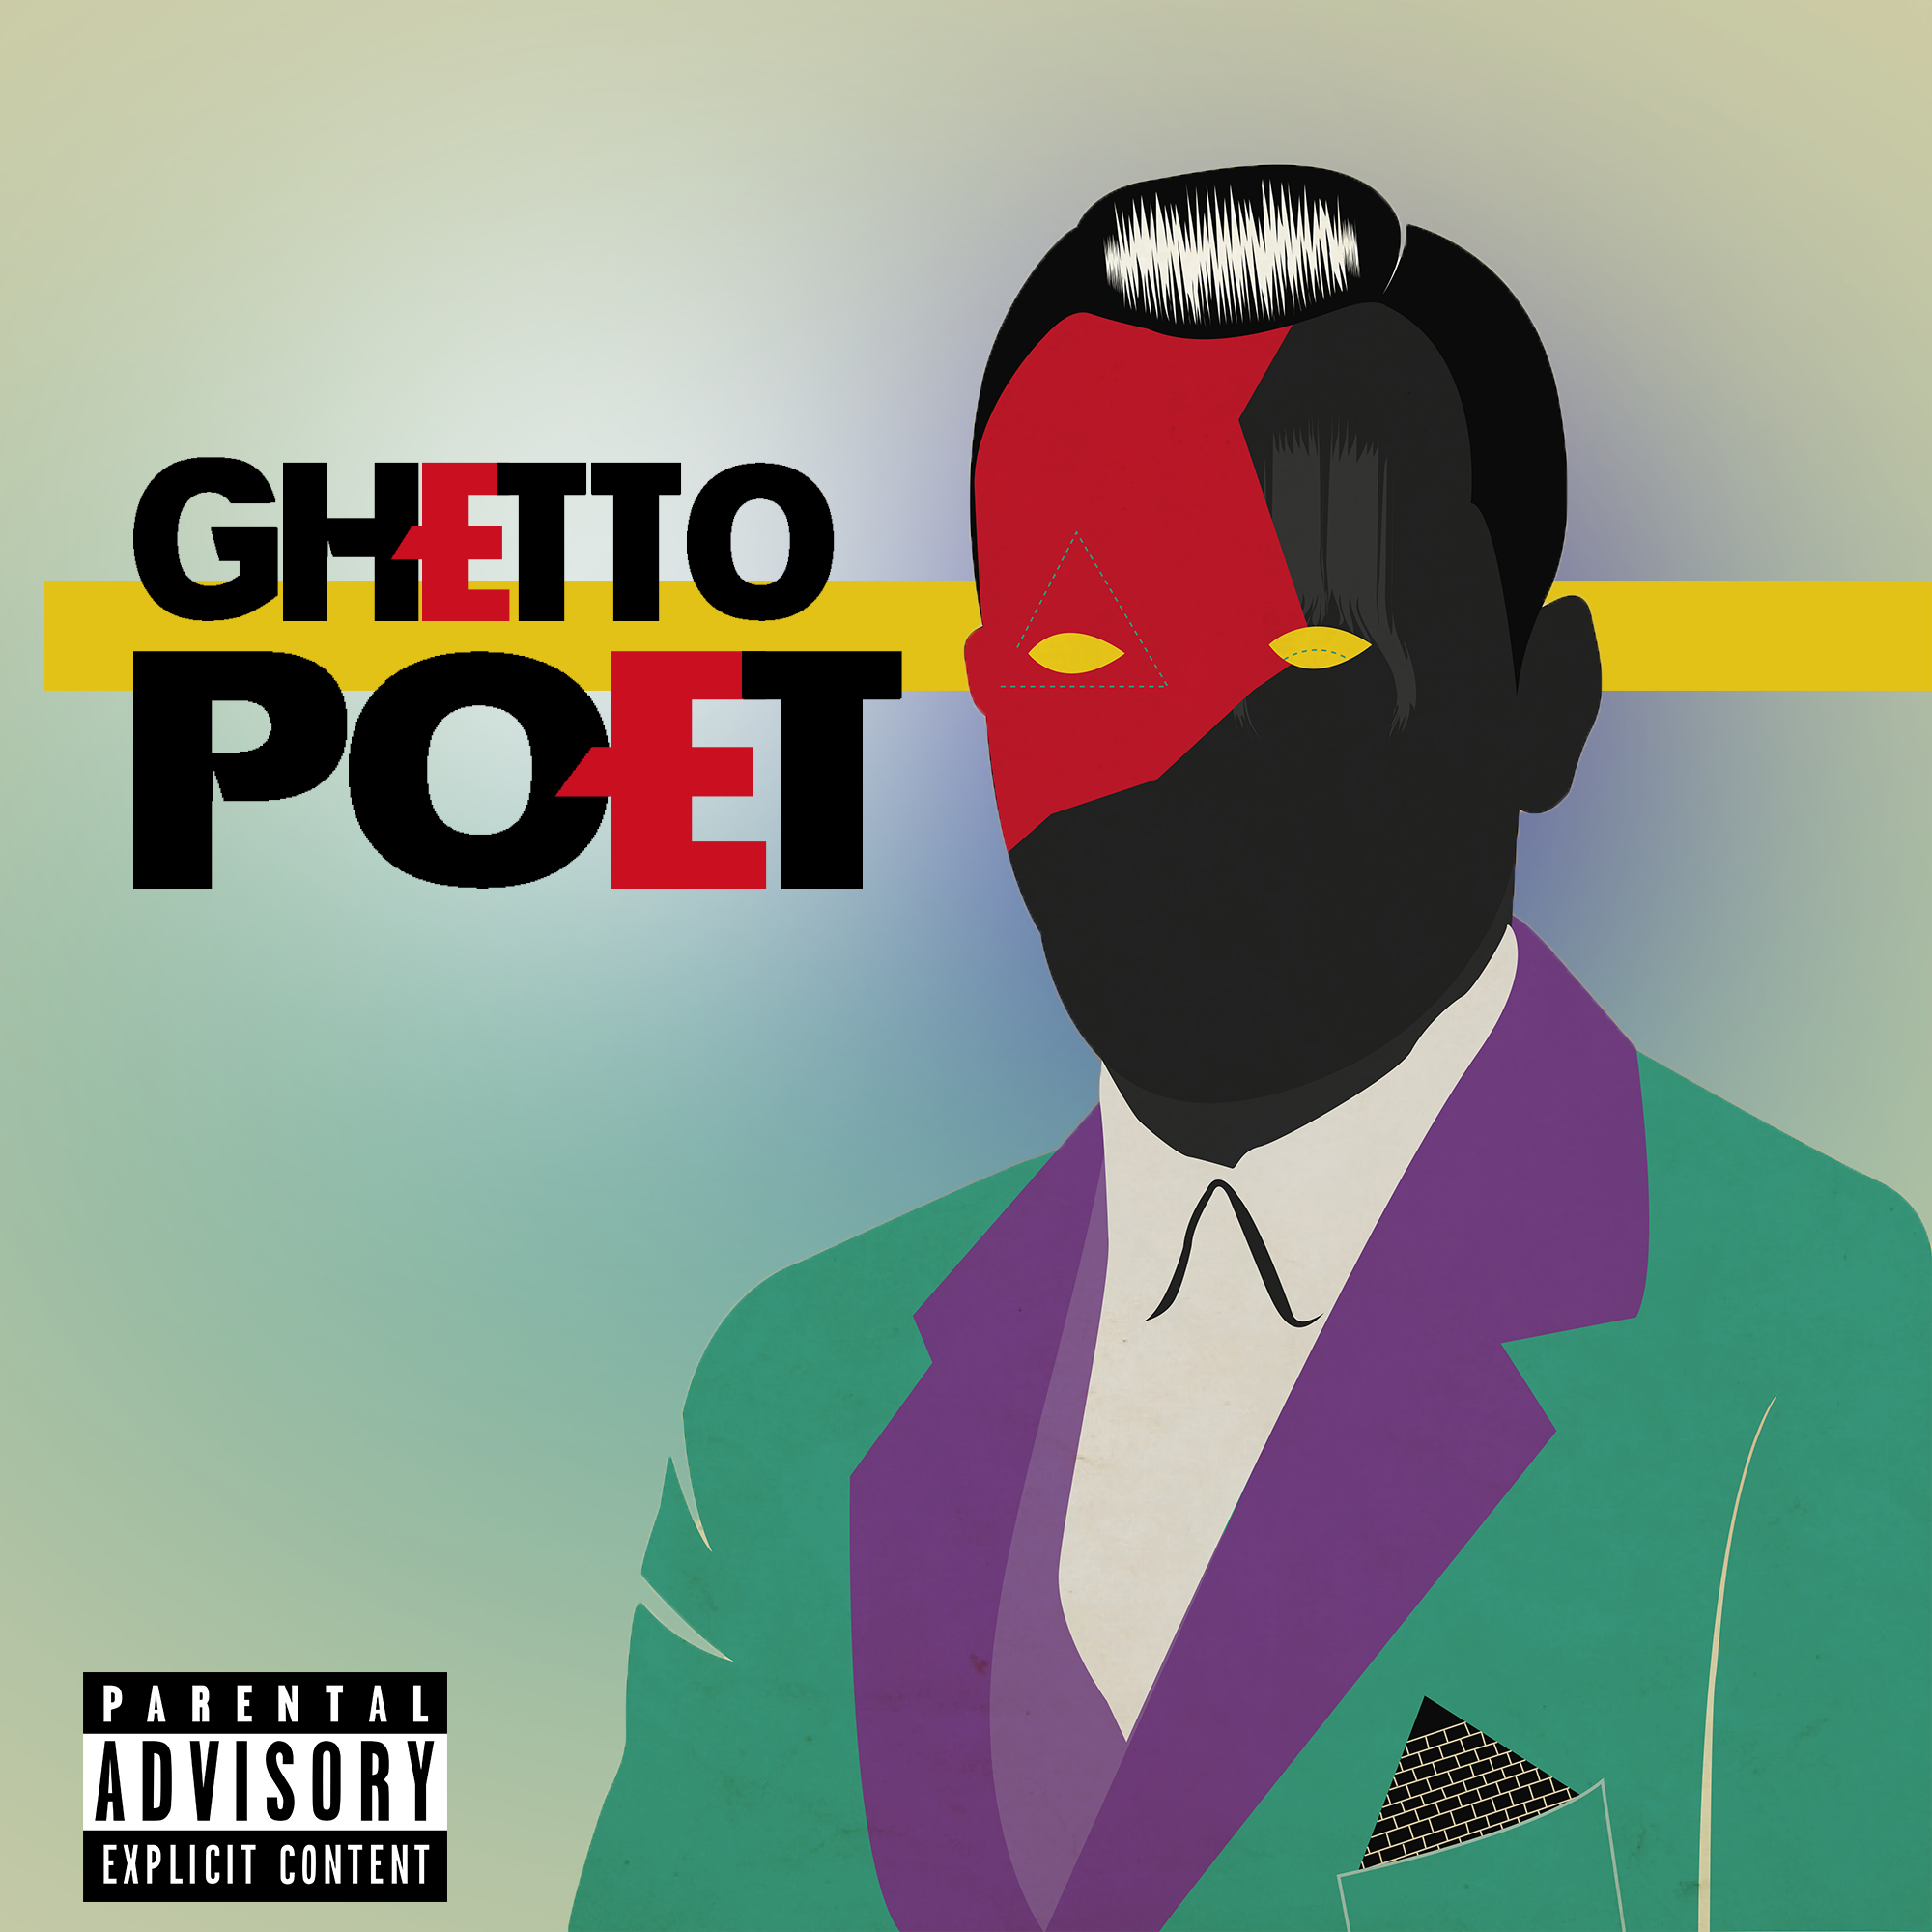 Ghetto_poet